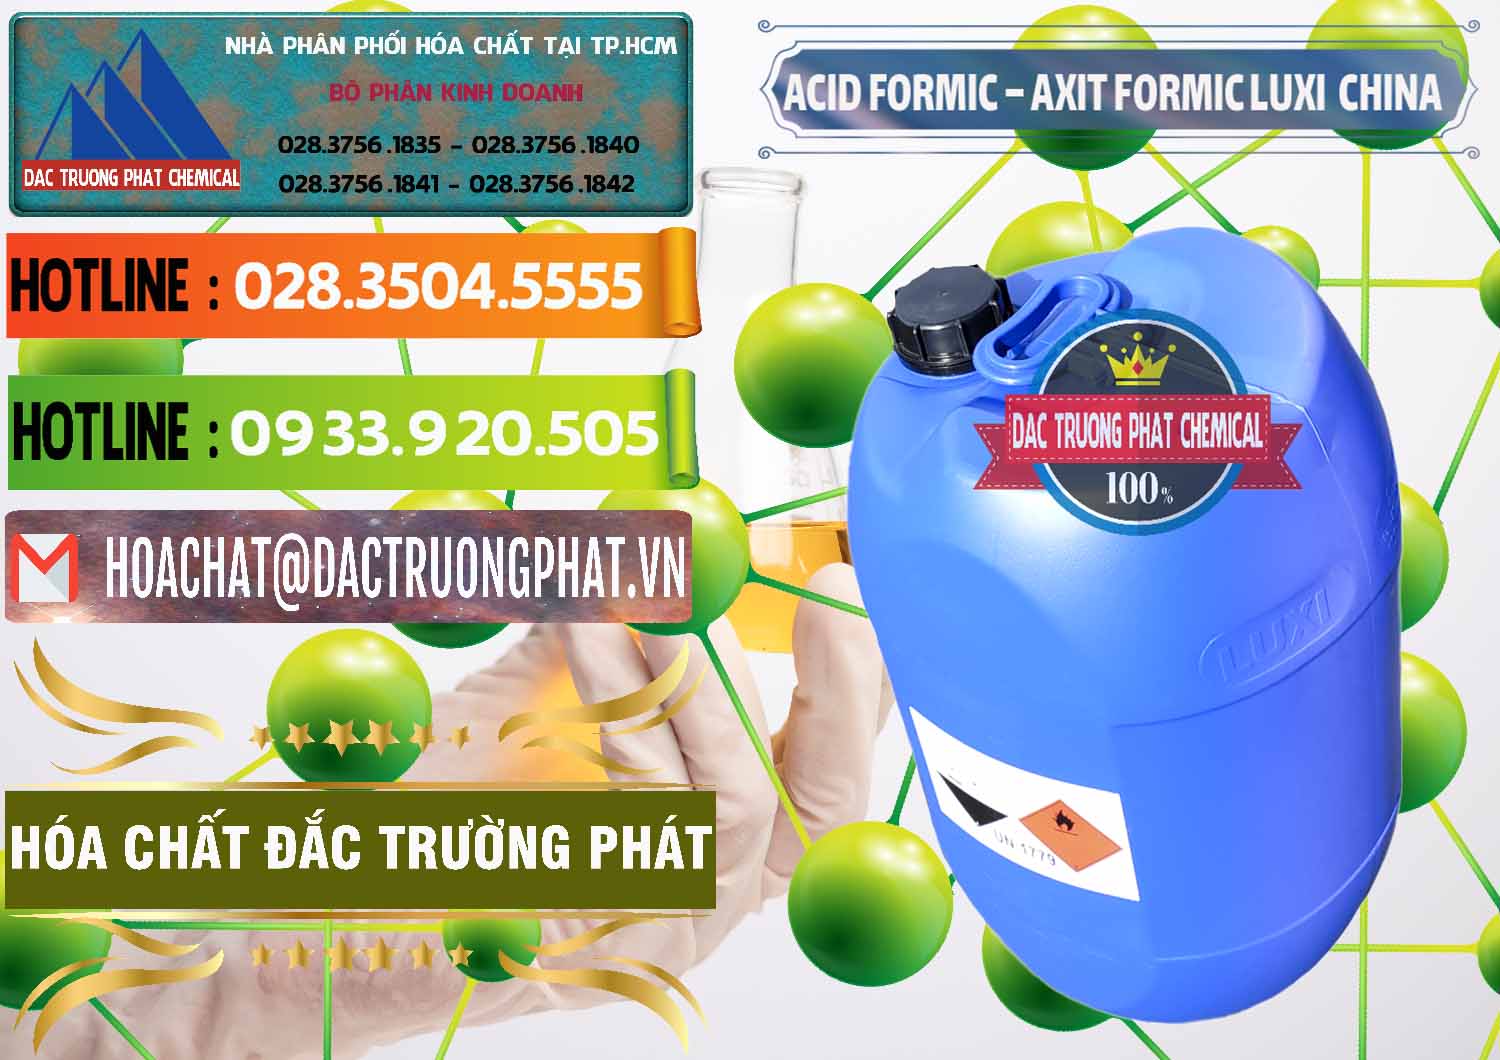 Đơn vị chuyên cung cấp _ bán Acid Formic - Axit Formic Luxi Trung Quốc China - 0029 - Cty phân phối _ kinh doanh hóa chất tại TP.HCM - cungcaphoachat.com.vn